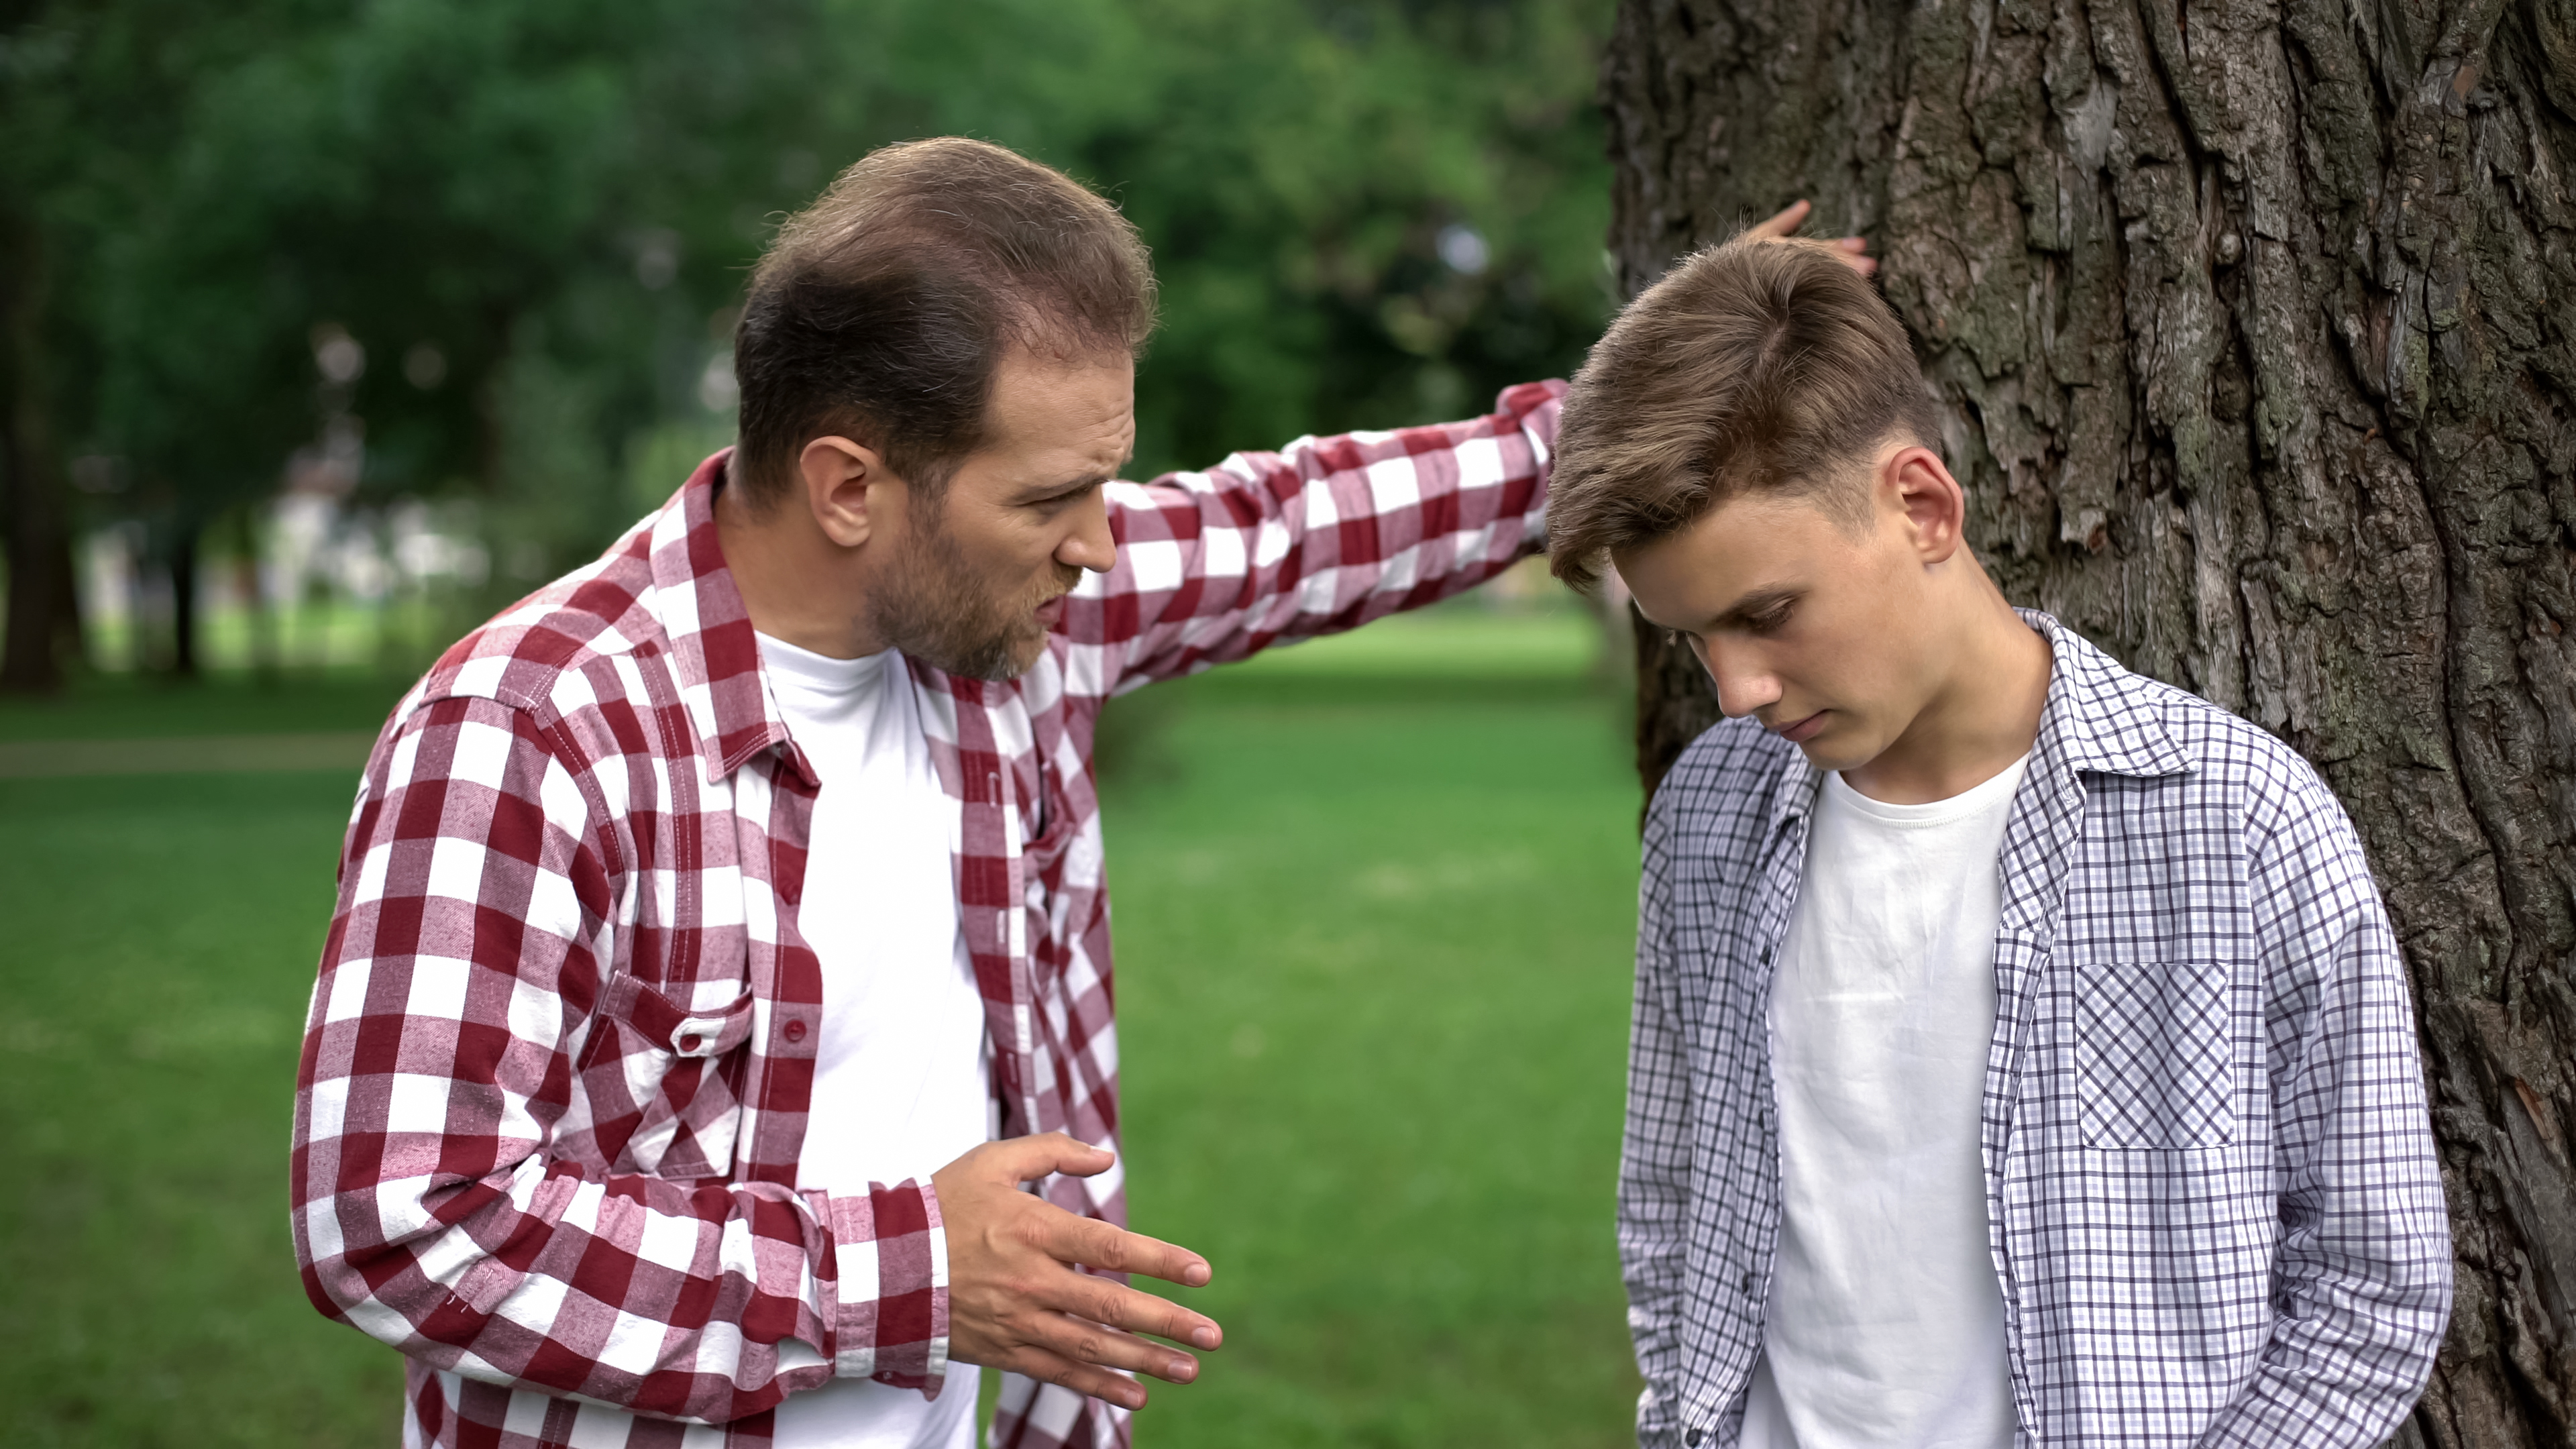 Ein älterer Mann schimpft mit einem jüngeren Mann im Freien | Quelle: Shutterstock